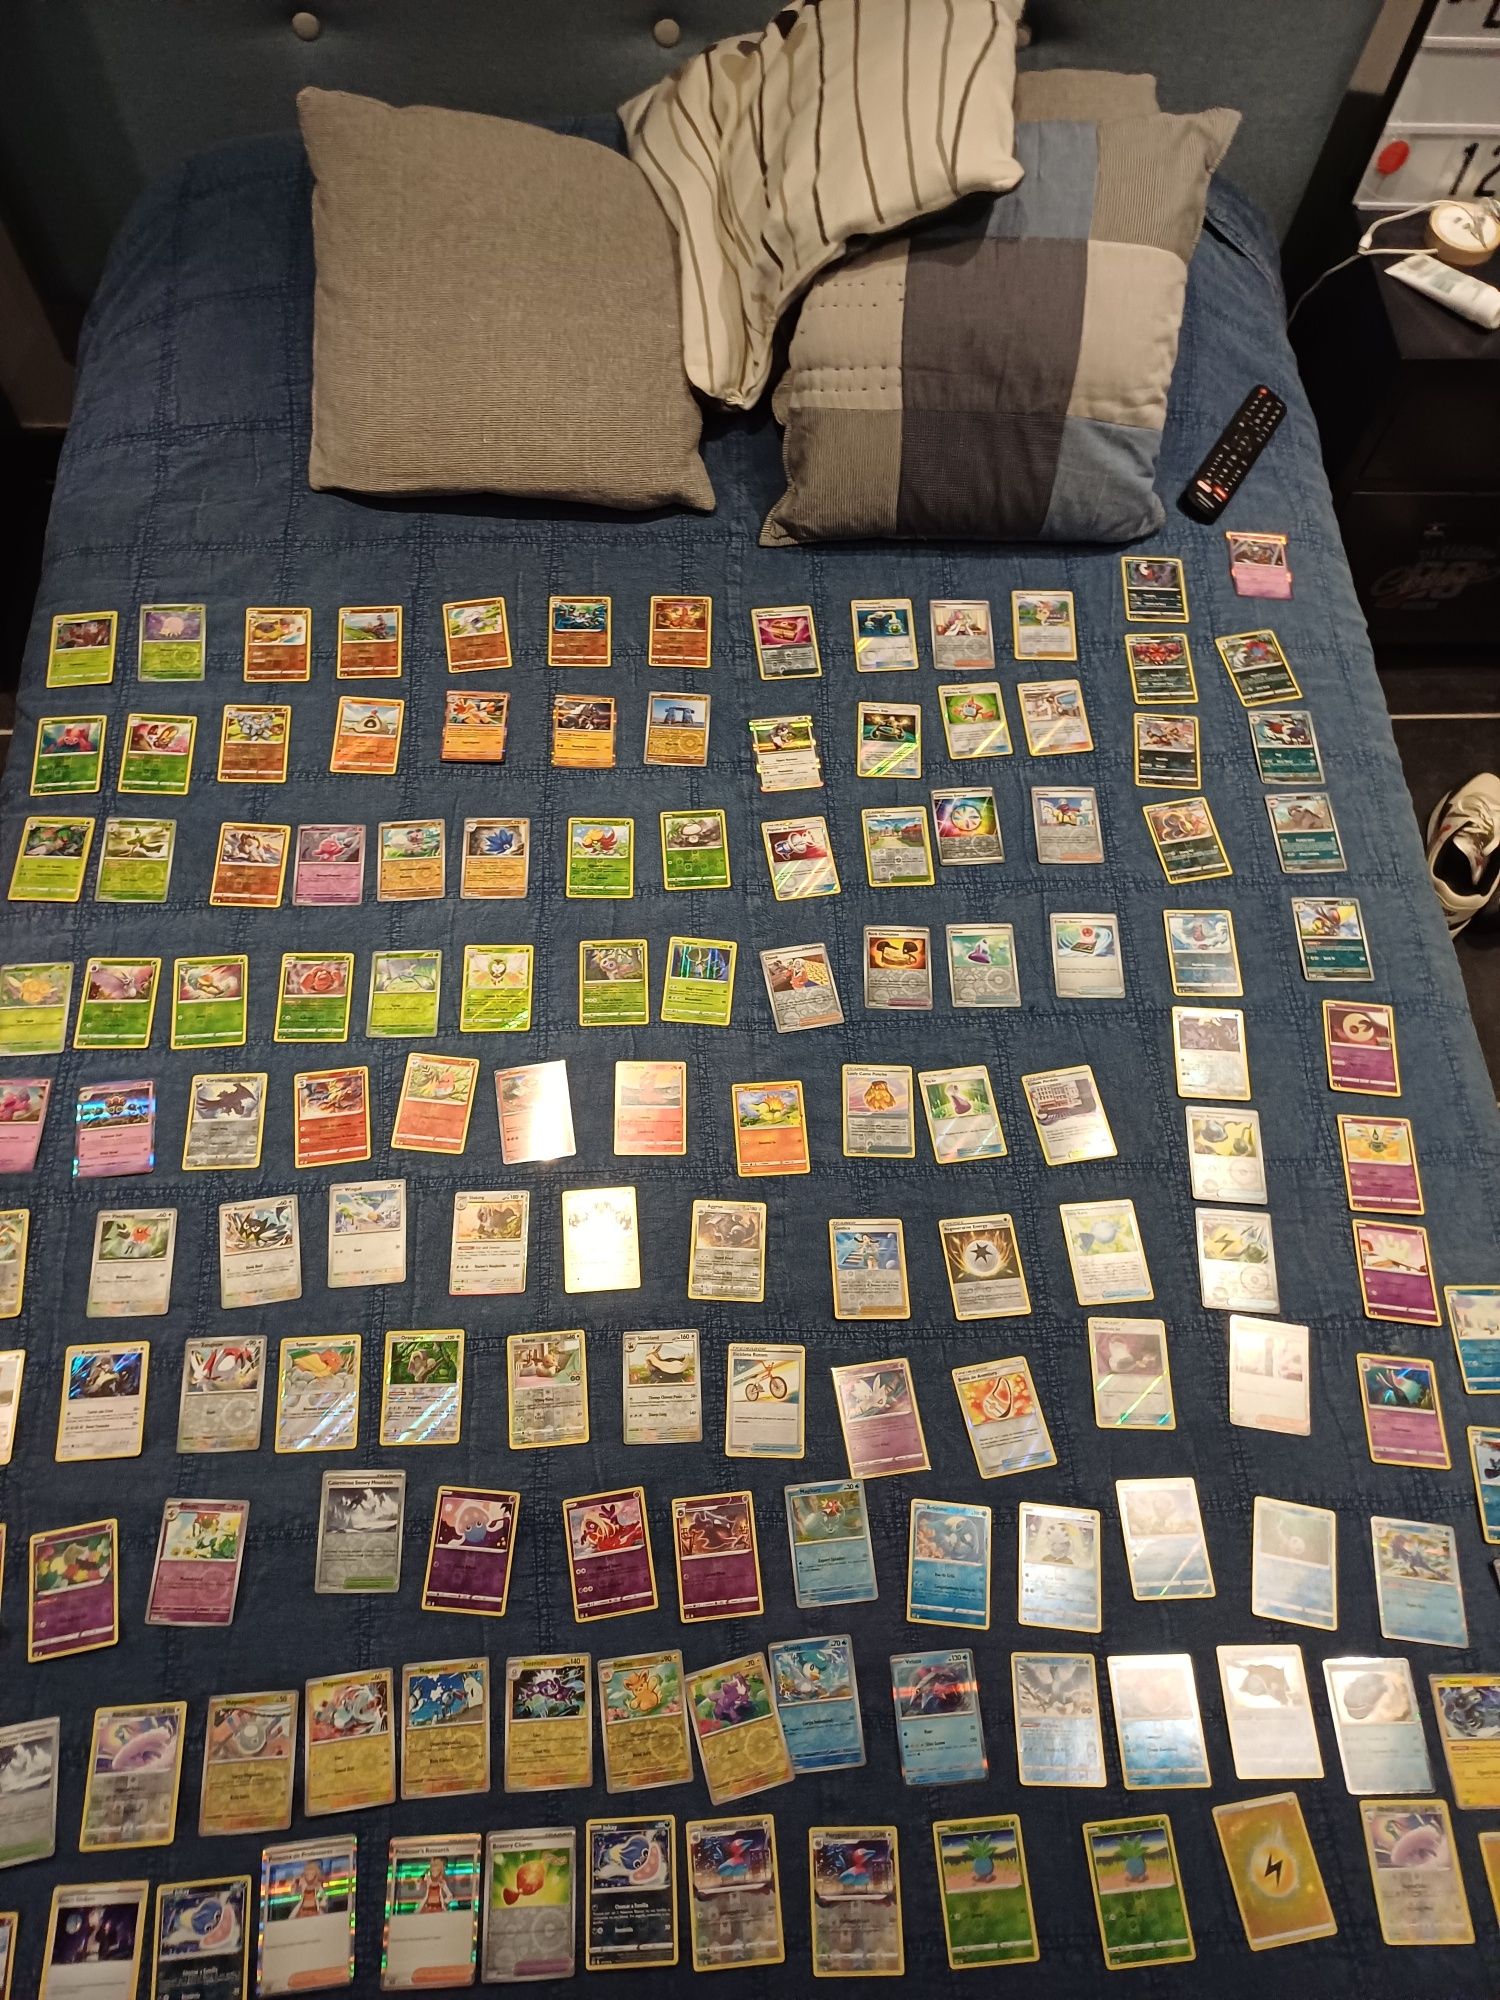 Lote de 16 Cartas de Pokémon Reverse Foil - Slightly Played em inglês